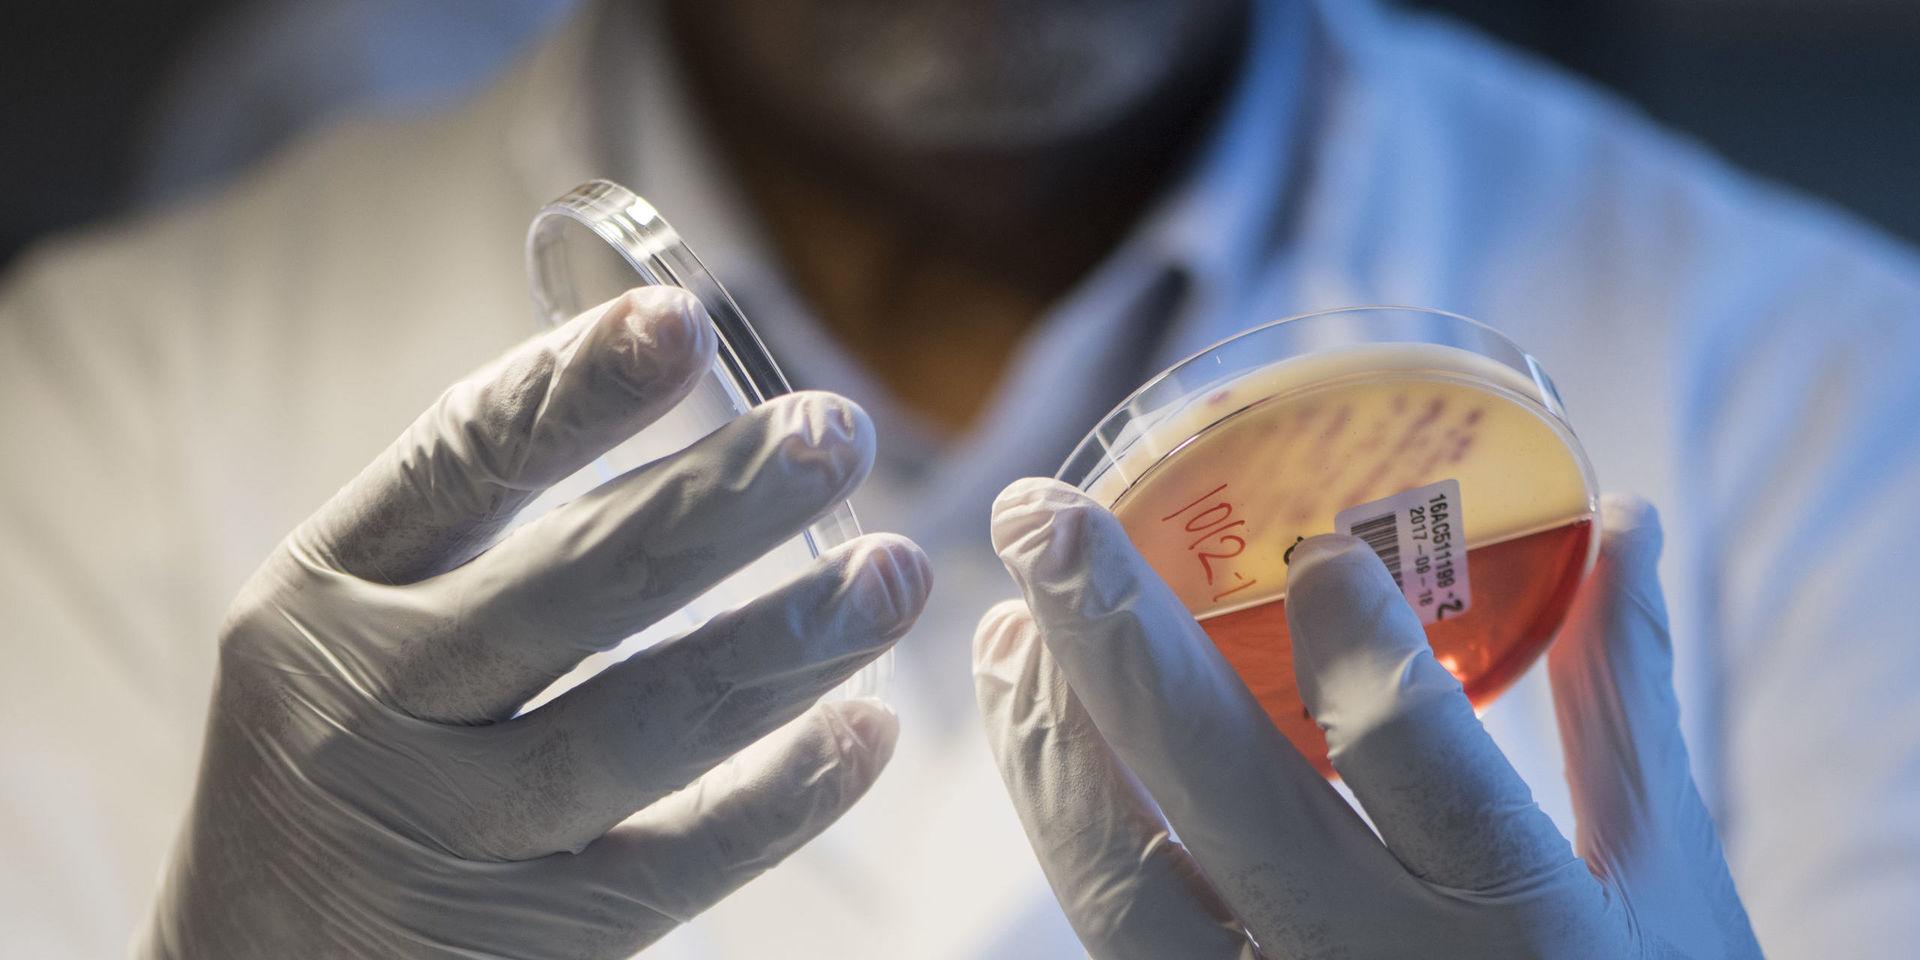 Forskare i bland annat Göteborg har upptäckt en hittills okänd gen som kan göra bakterier resistenta mot antibiotika. Arkivbild.